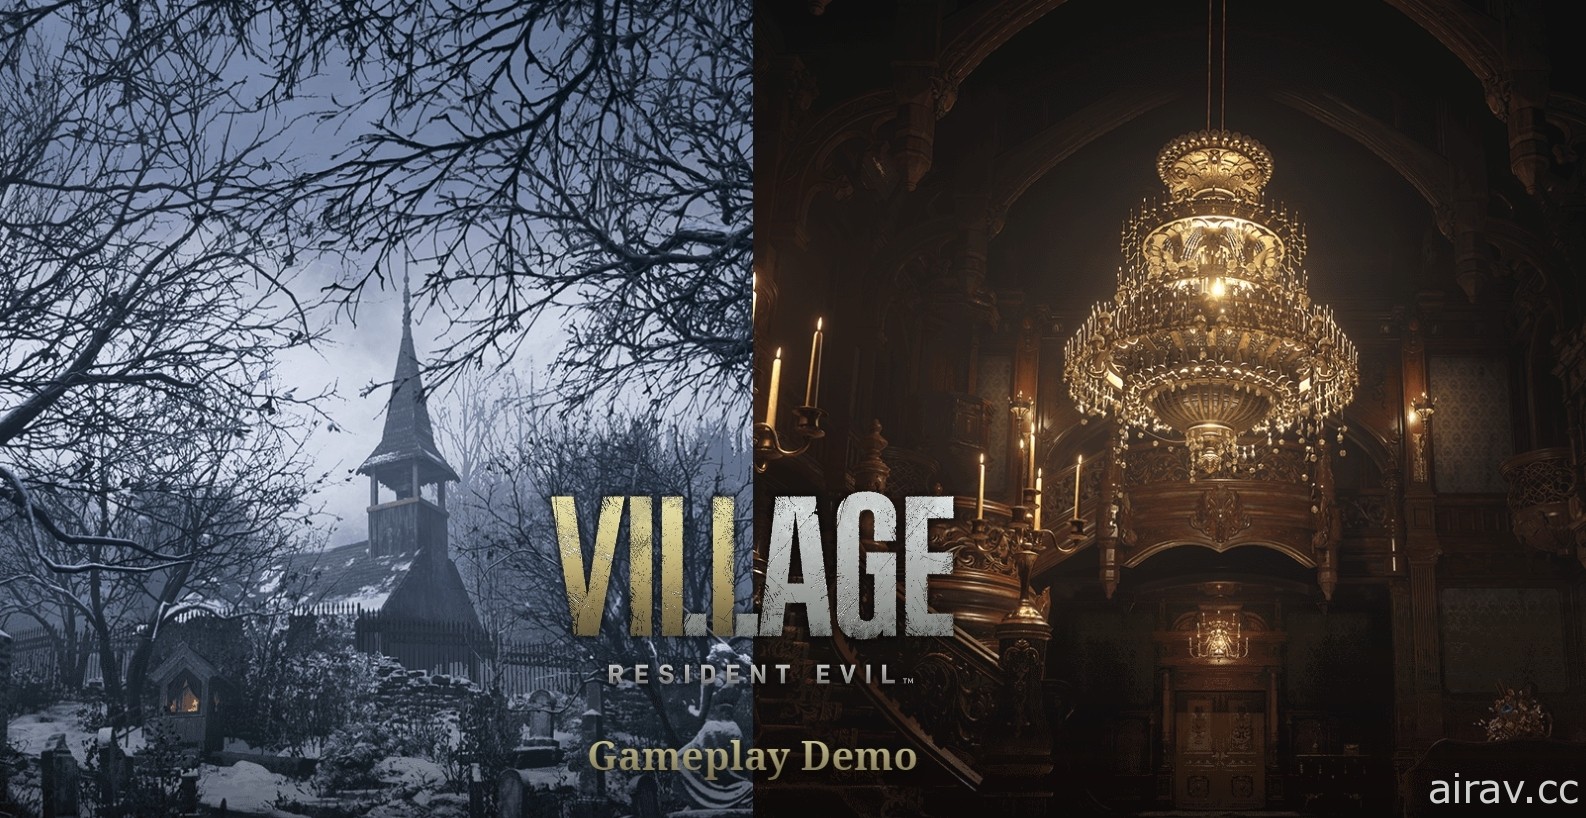 《恶灵古堡 8：村庄》公开三平台体验版时程 PS4、PS5 版将抢先开放测试